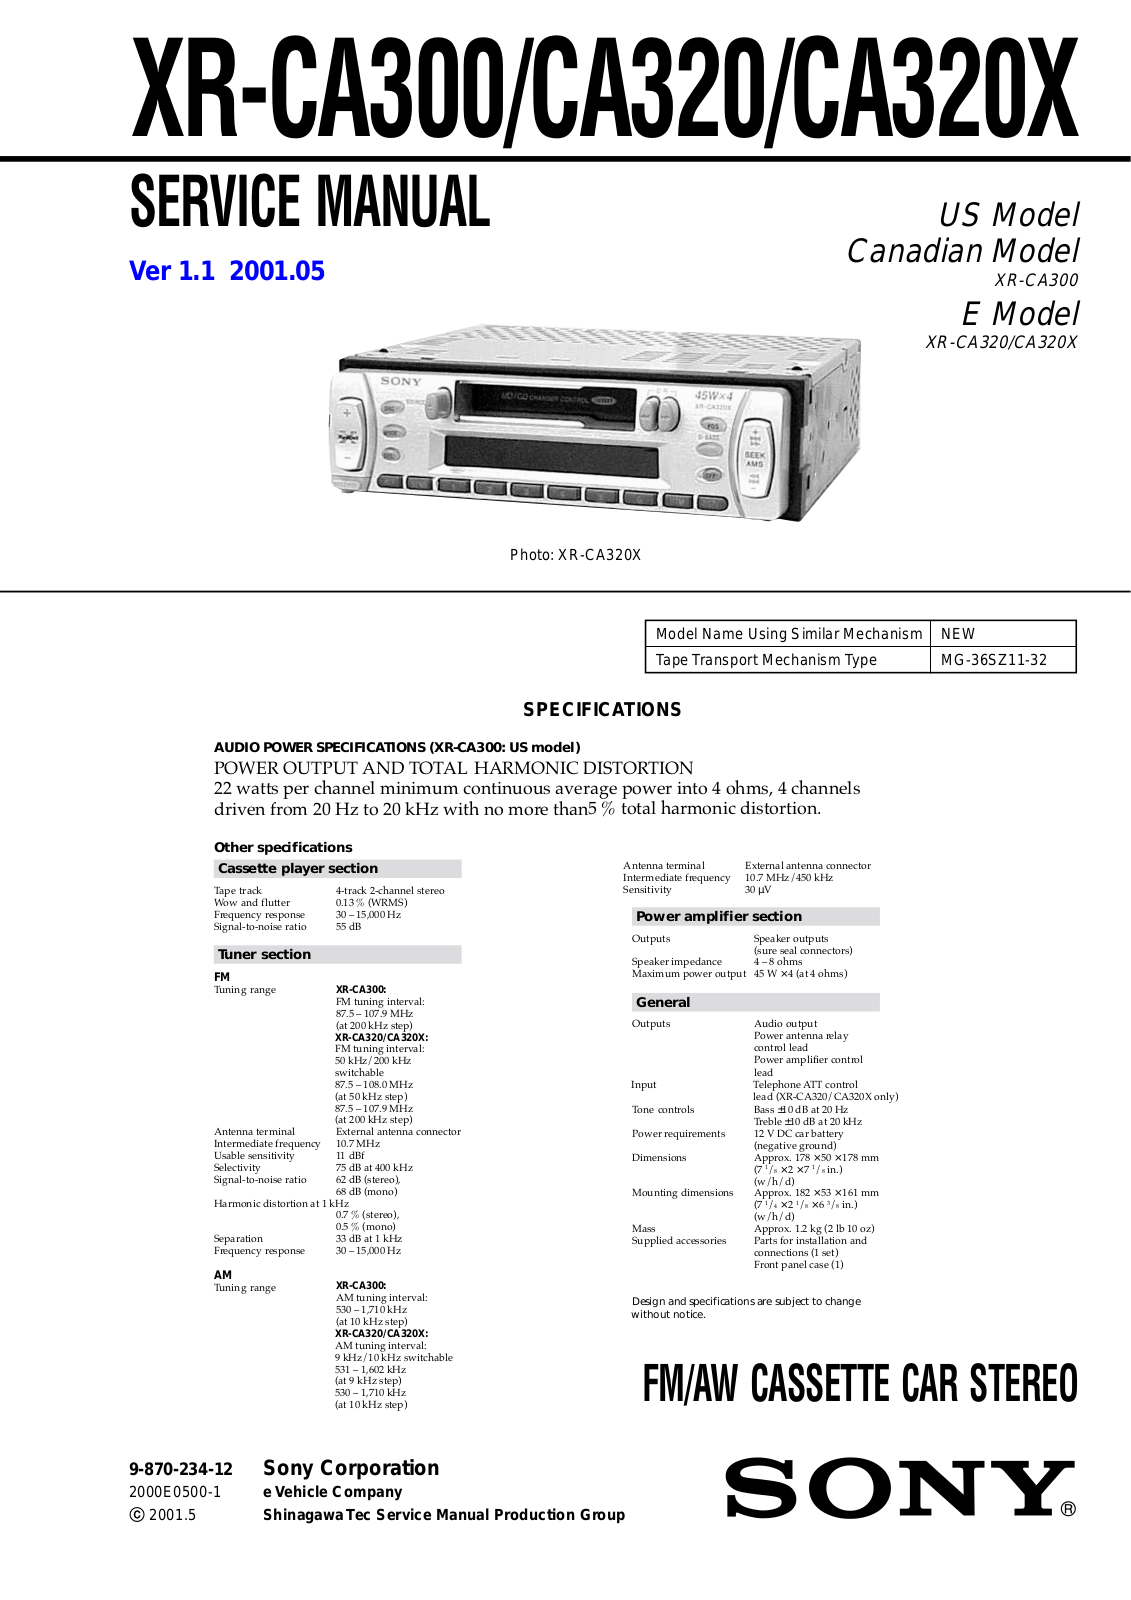 Sony XR-CA300, XR-CA320X Service manual